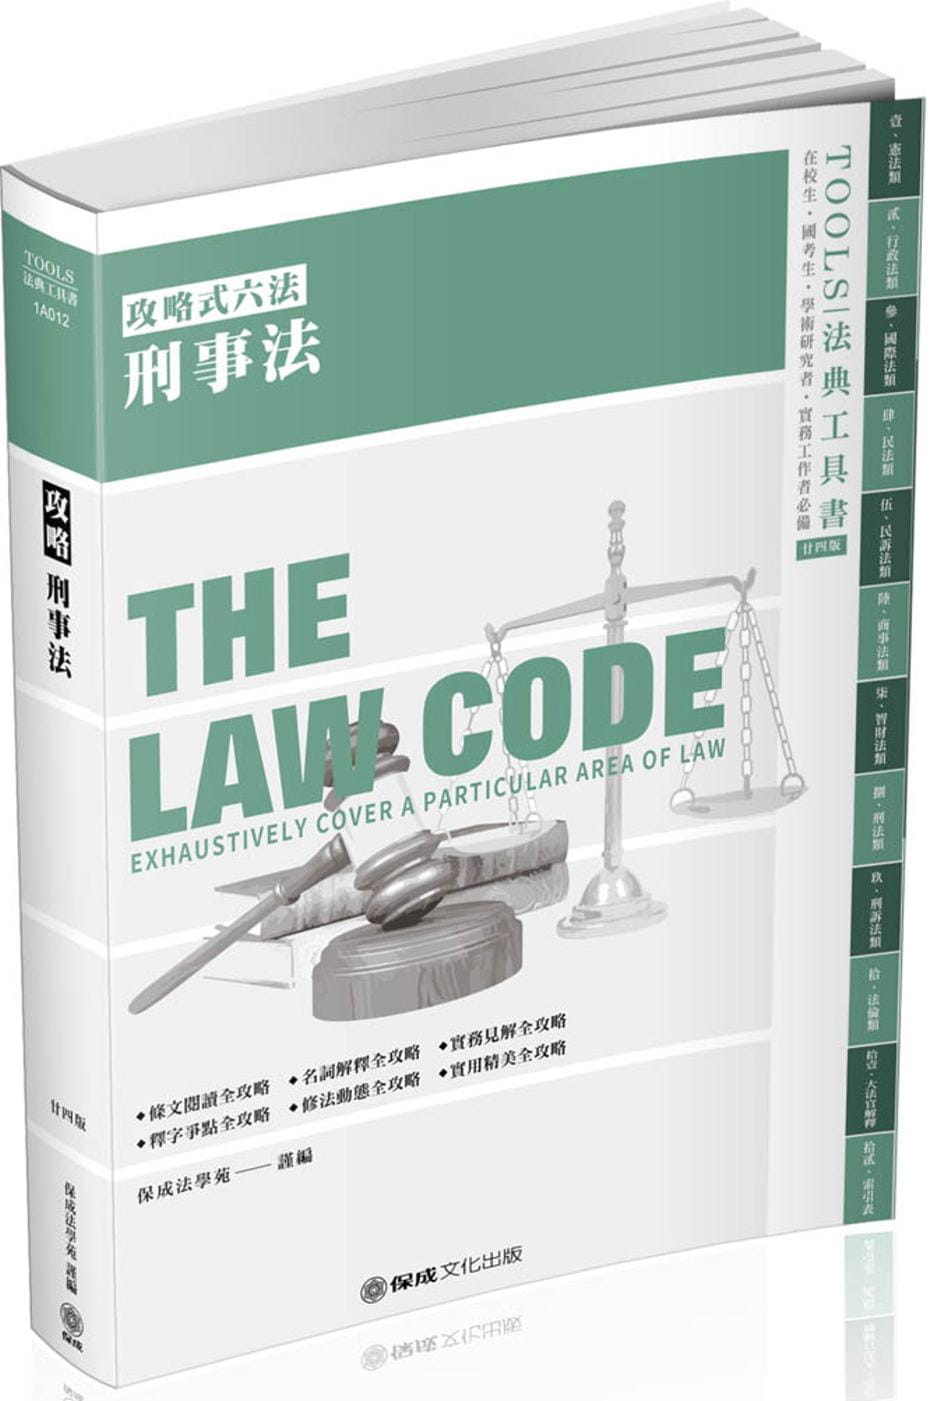 攻略刑事法：2020法律法典工具書(保成)(24版)